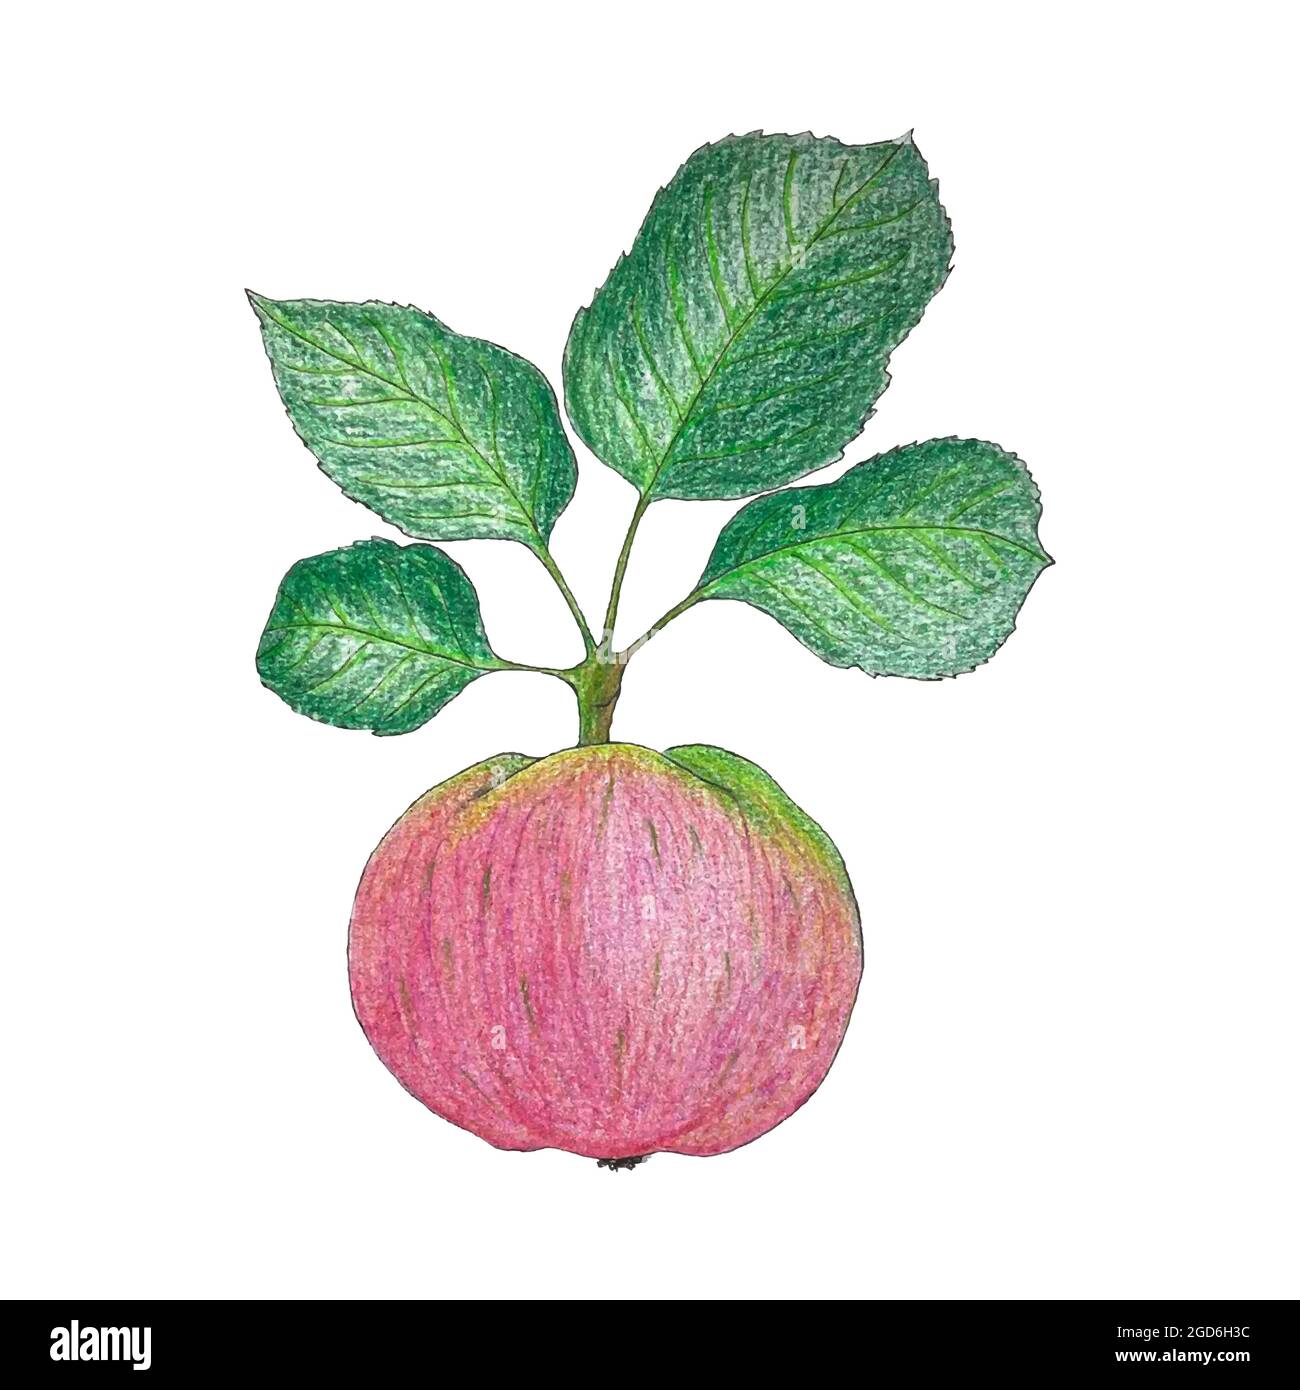 Zeichnung eines Apfels. Aquarell- und Bleistiftkunst. Zweig mit einem leuchtend rosa Apfel und grünen Blättern. Auf einem weißen Hintergrund isoliert. Vektorgrafik. Stock Vektor